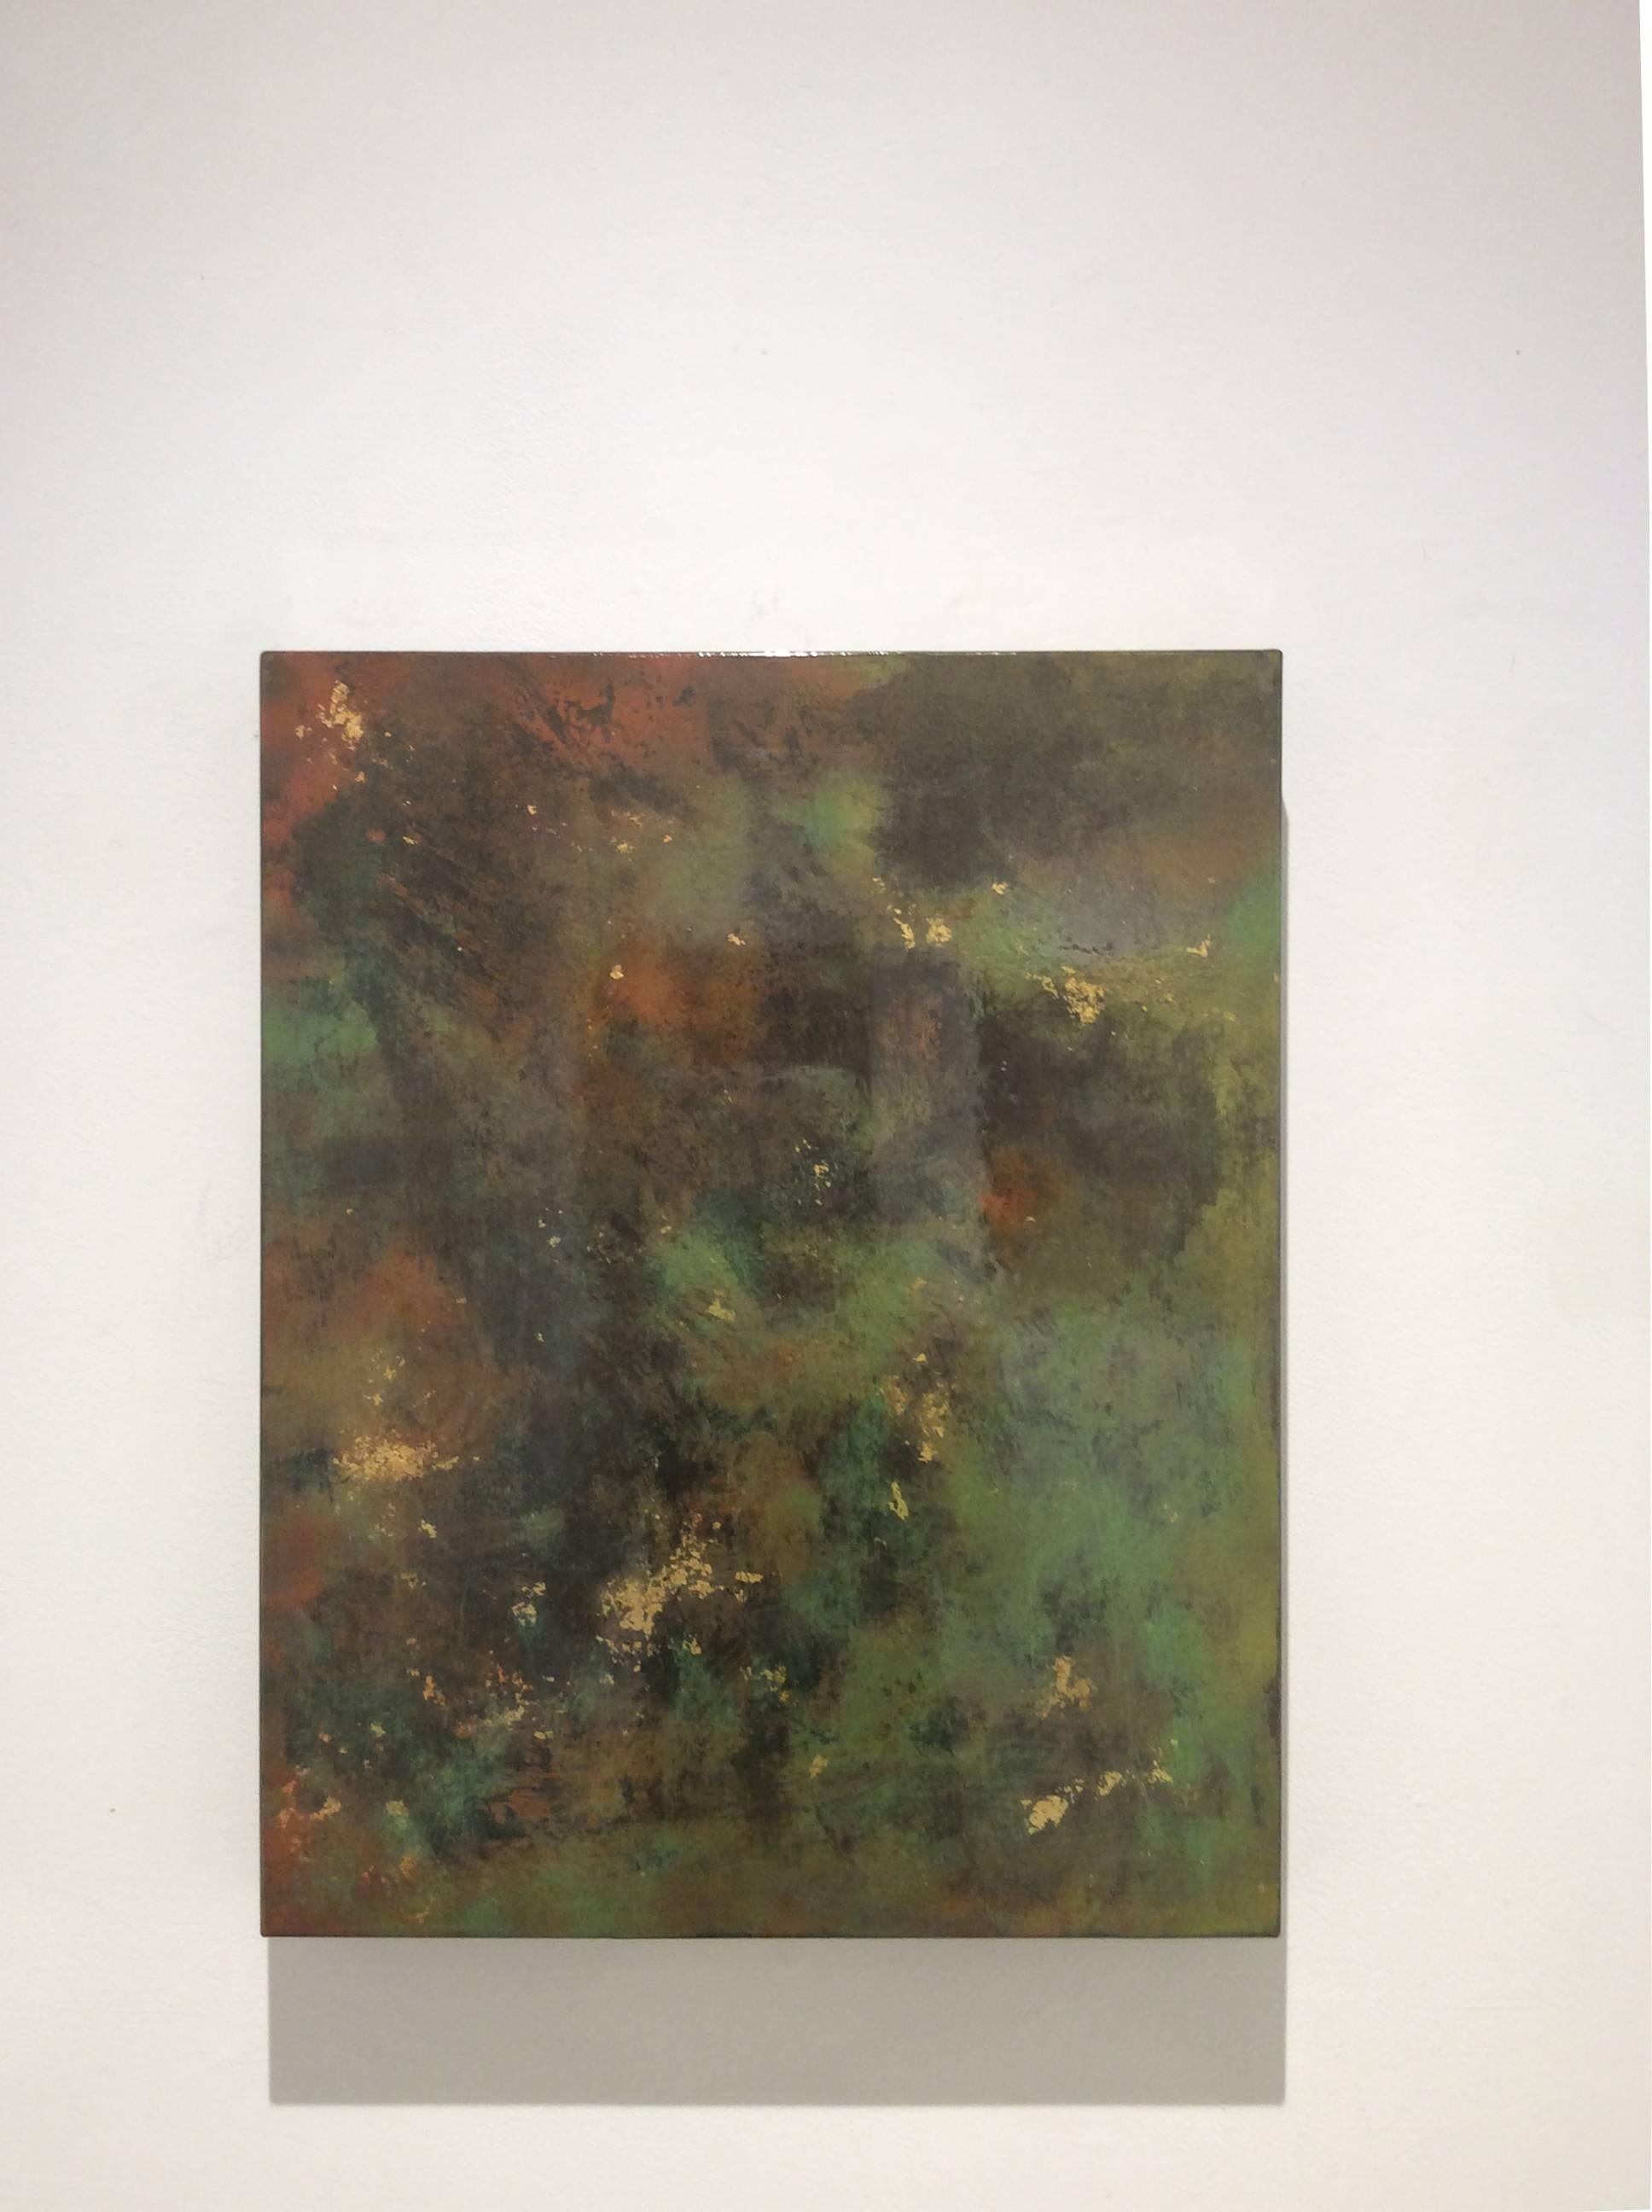 Une journée à l'extérieur de Paris (peinture abstraite sur métal avec vert, Sienne et or) - Painting de Bruce Murphy